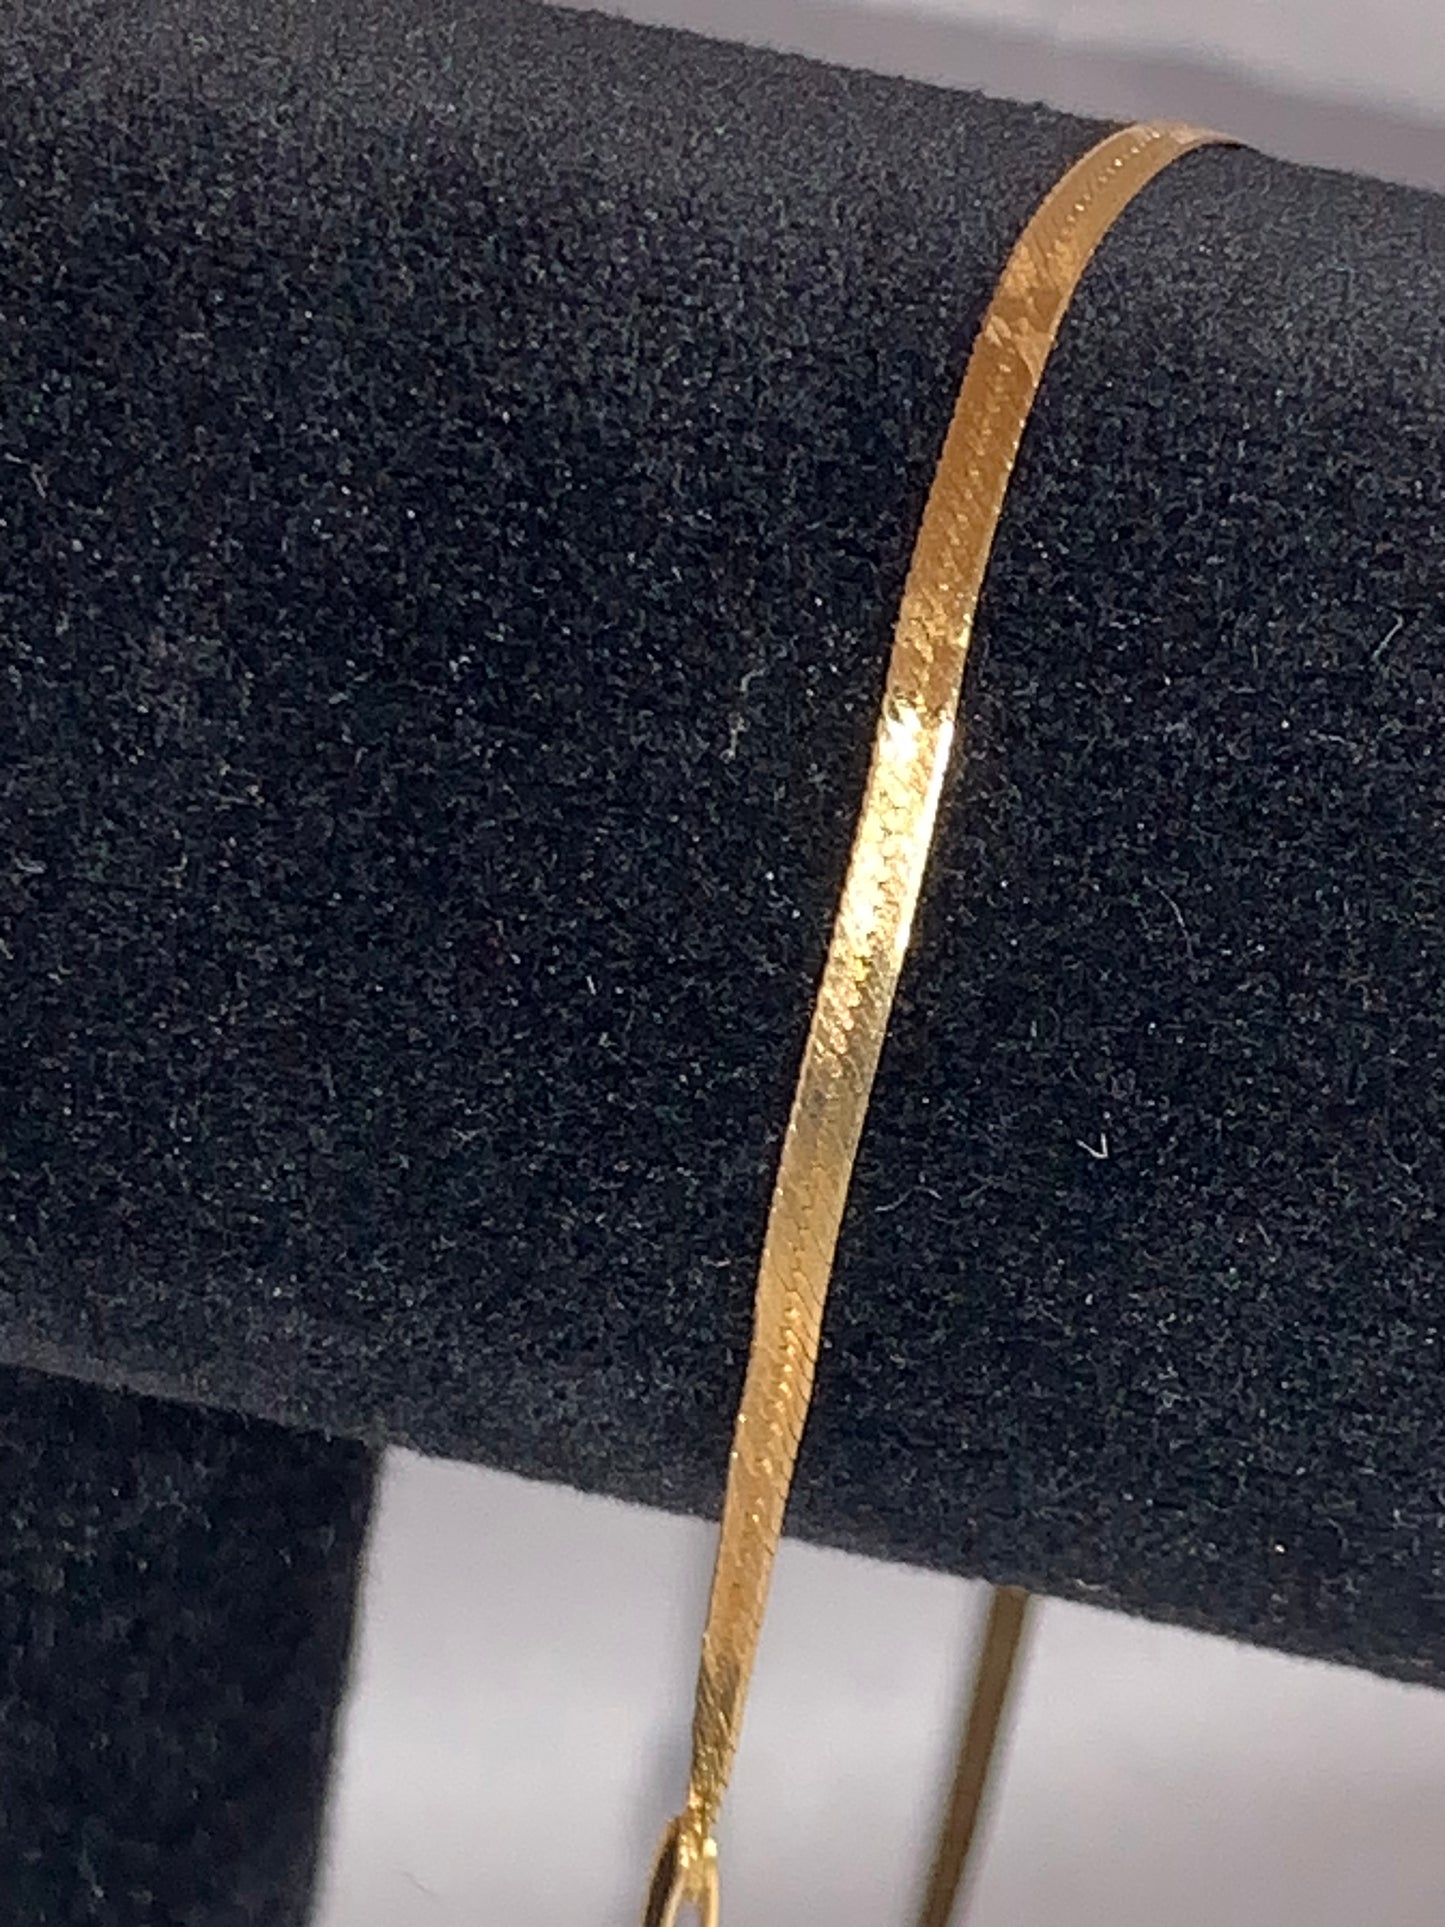 7 1/2" long 14 Kt Gold Herringbone Bracelet